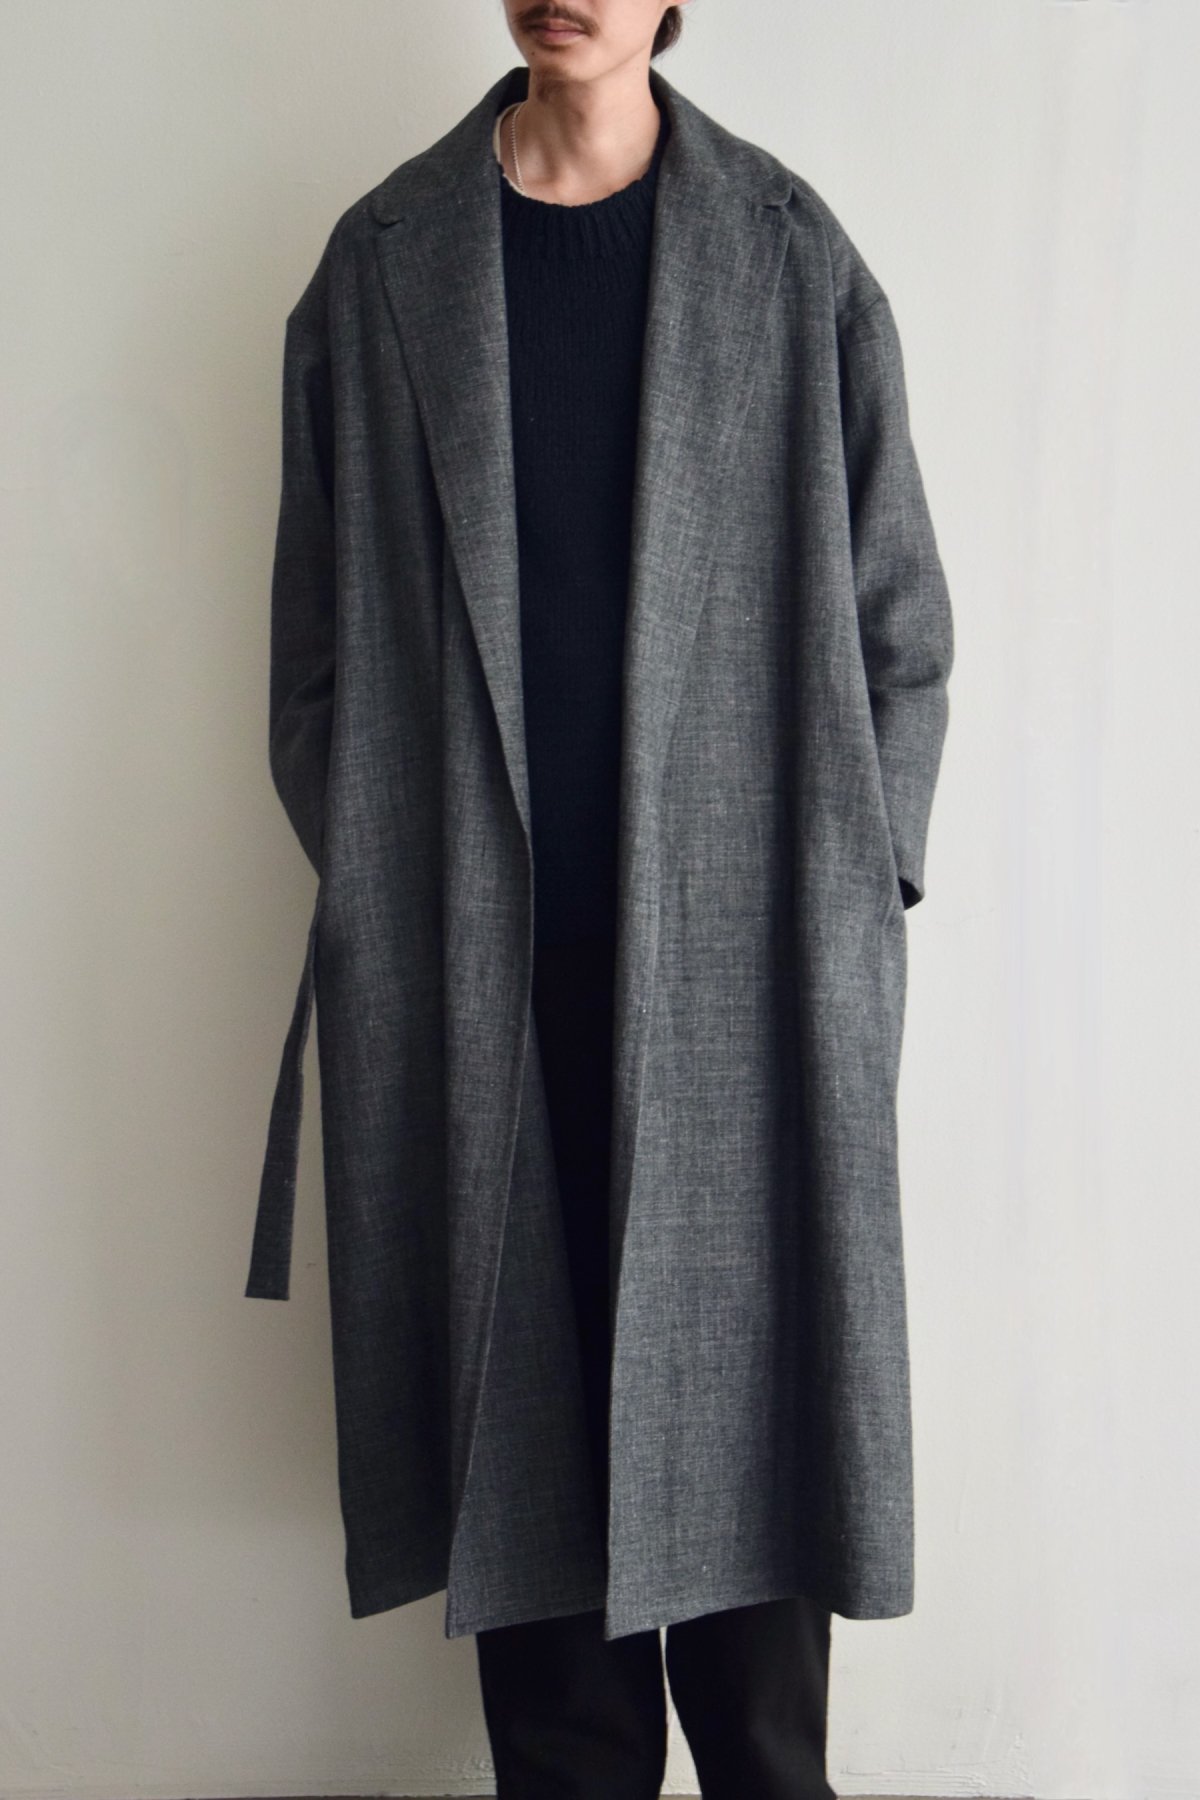 COSMIC WONDER / Linen wool sharkskin belted coat / Black